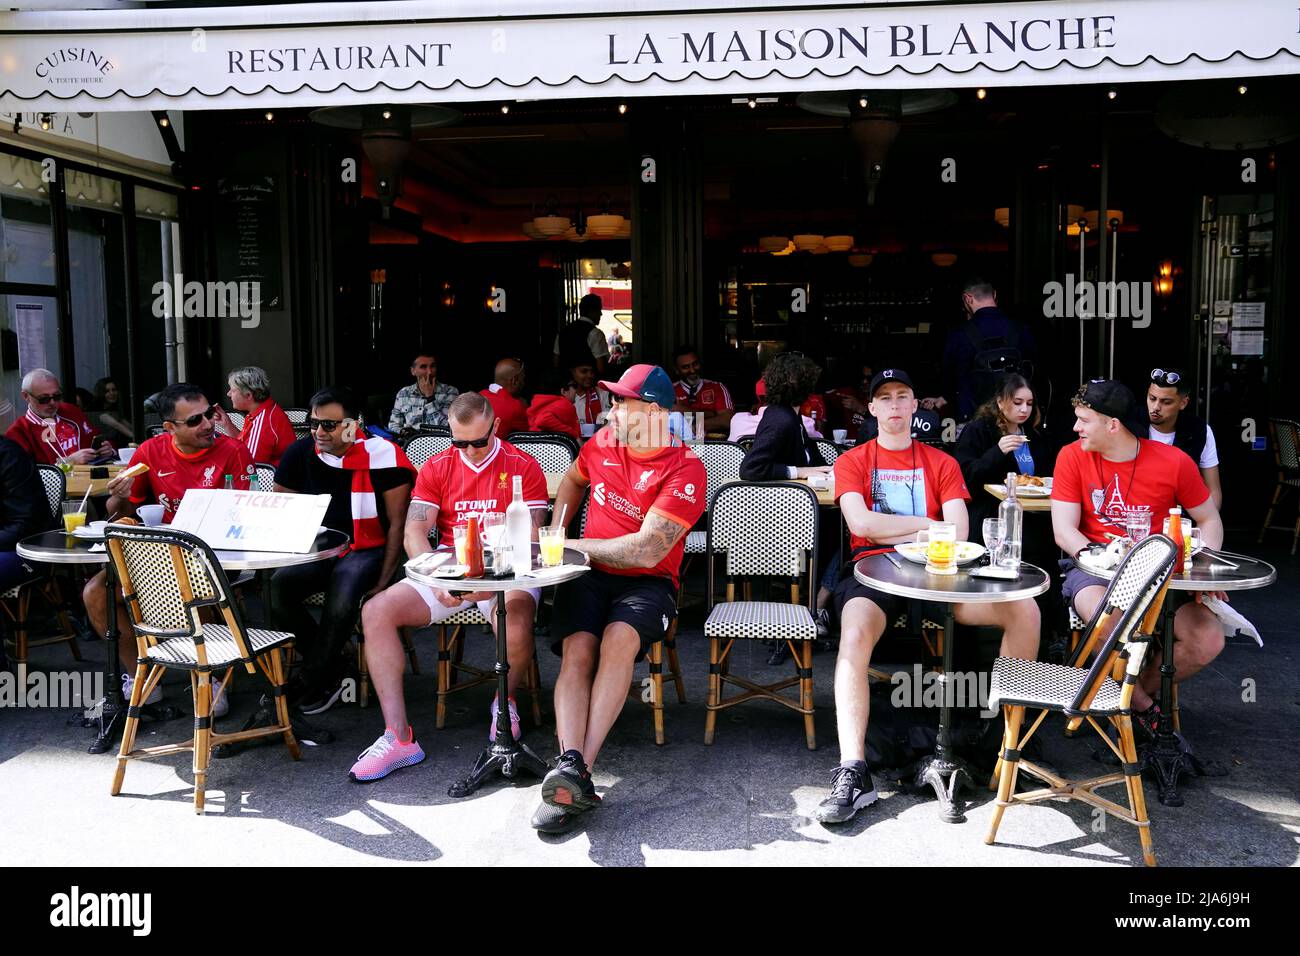 Liverpool-Fans im La Maison Blanche vor dem UEFA Champions League-Finale im Stade de France, Paris. Bilddatum: Samstag, 28. Mai 2022. Stockfoto